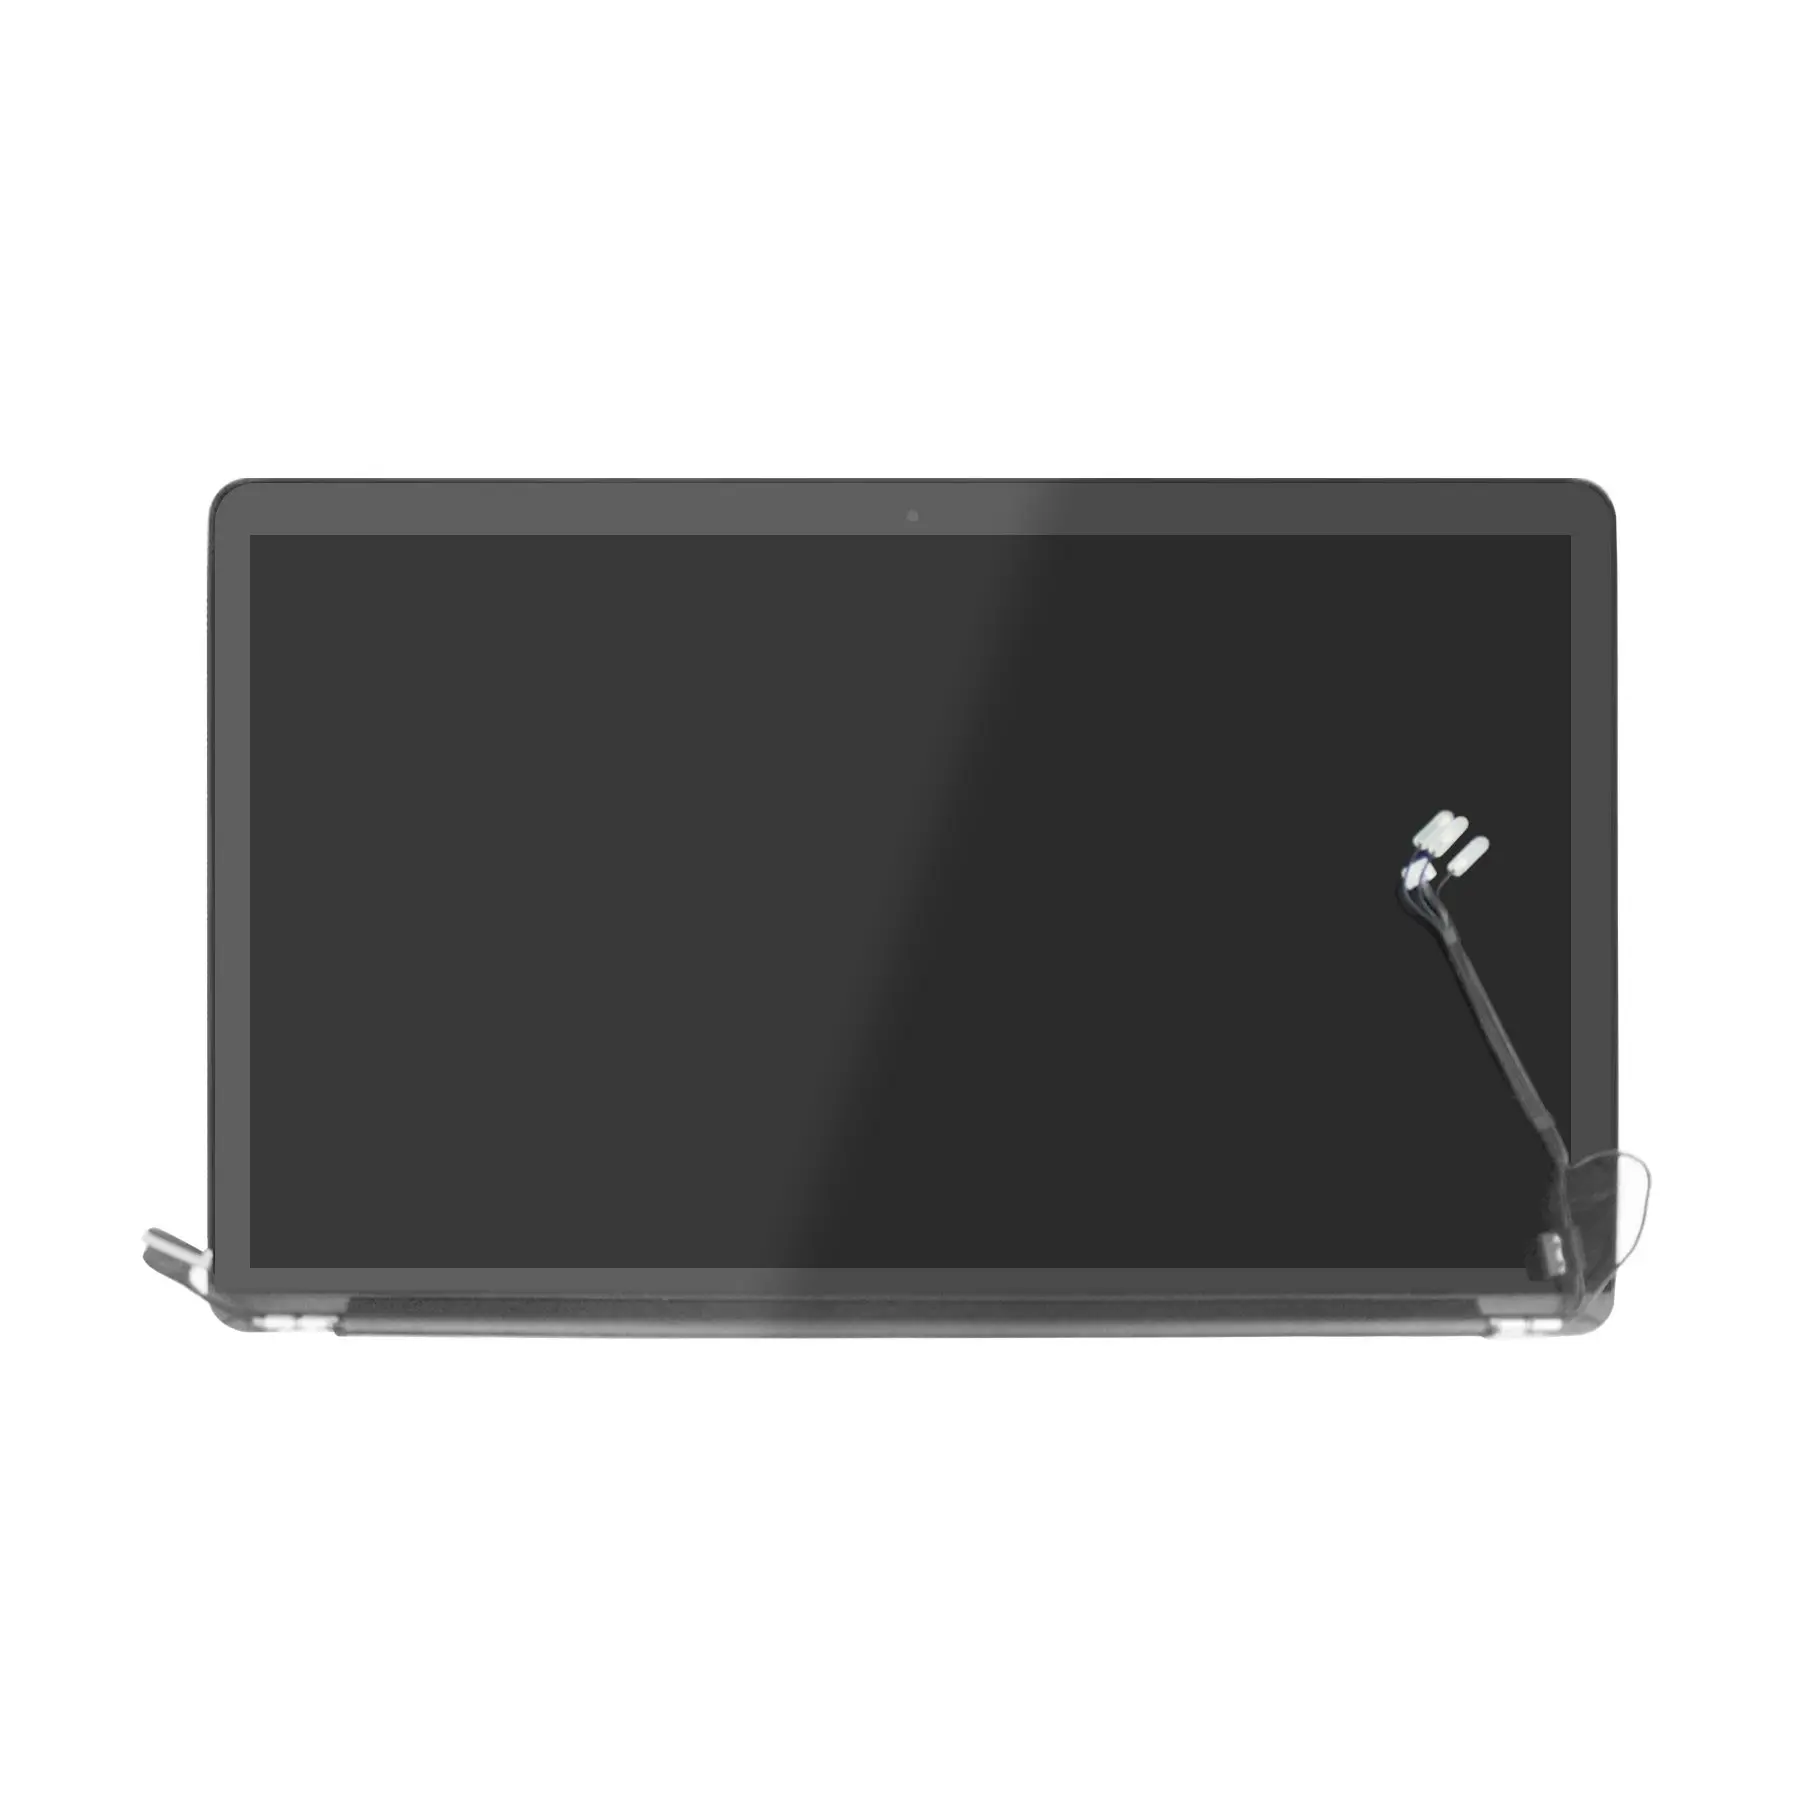 Pantalla MacBook Pro Retina 15 A1398: Características y Especificaciones